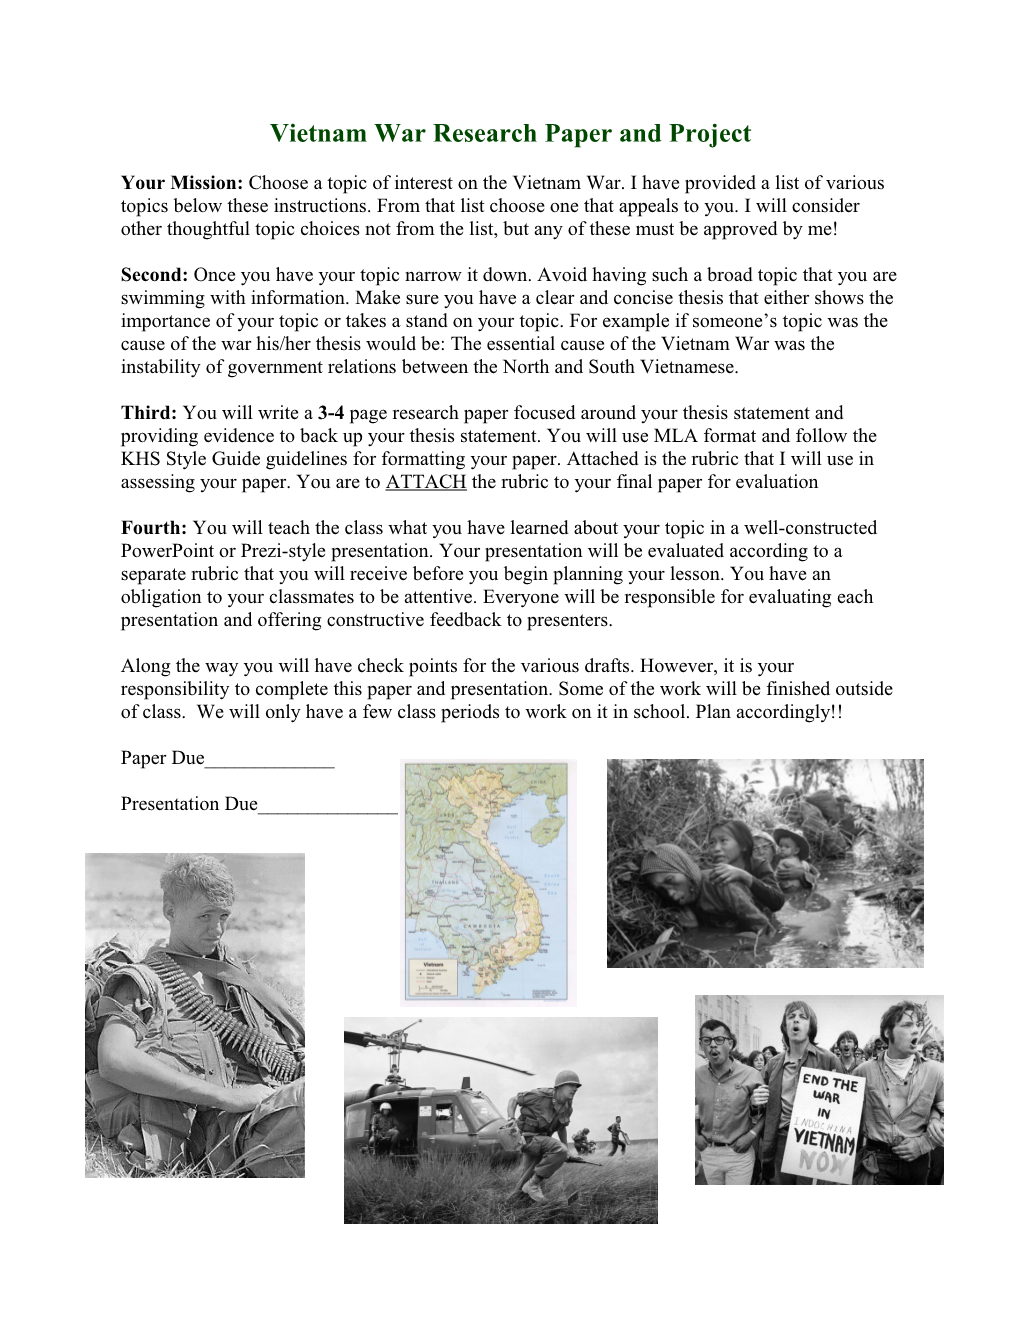 Vietnam War Research Project